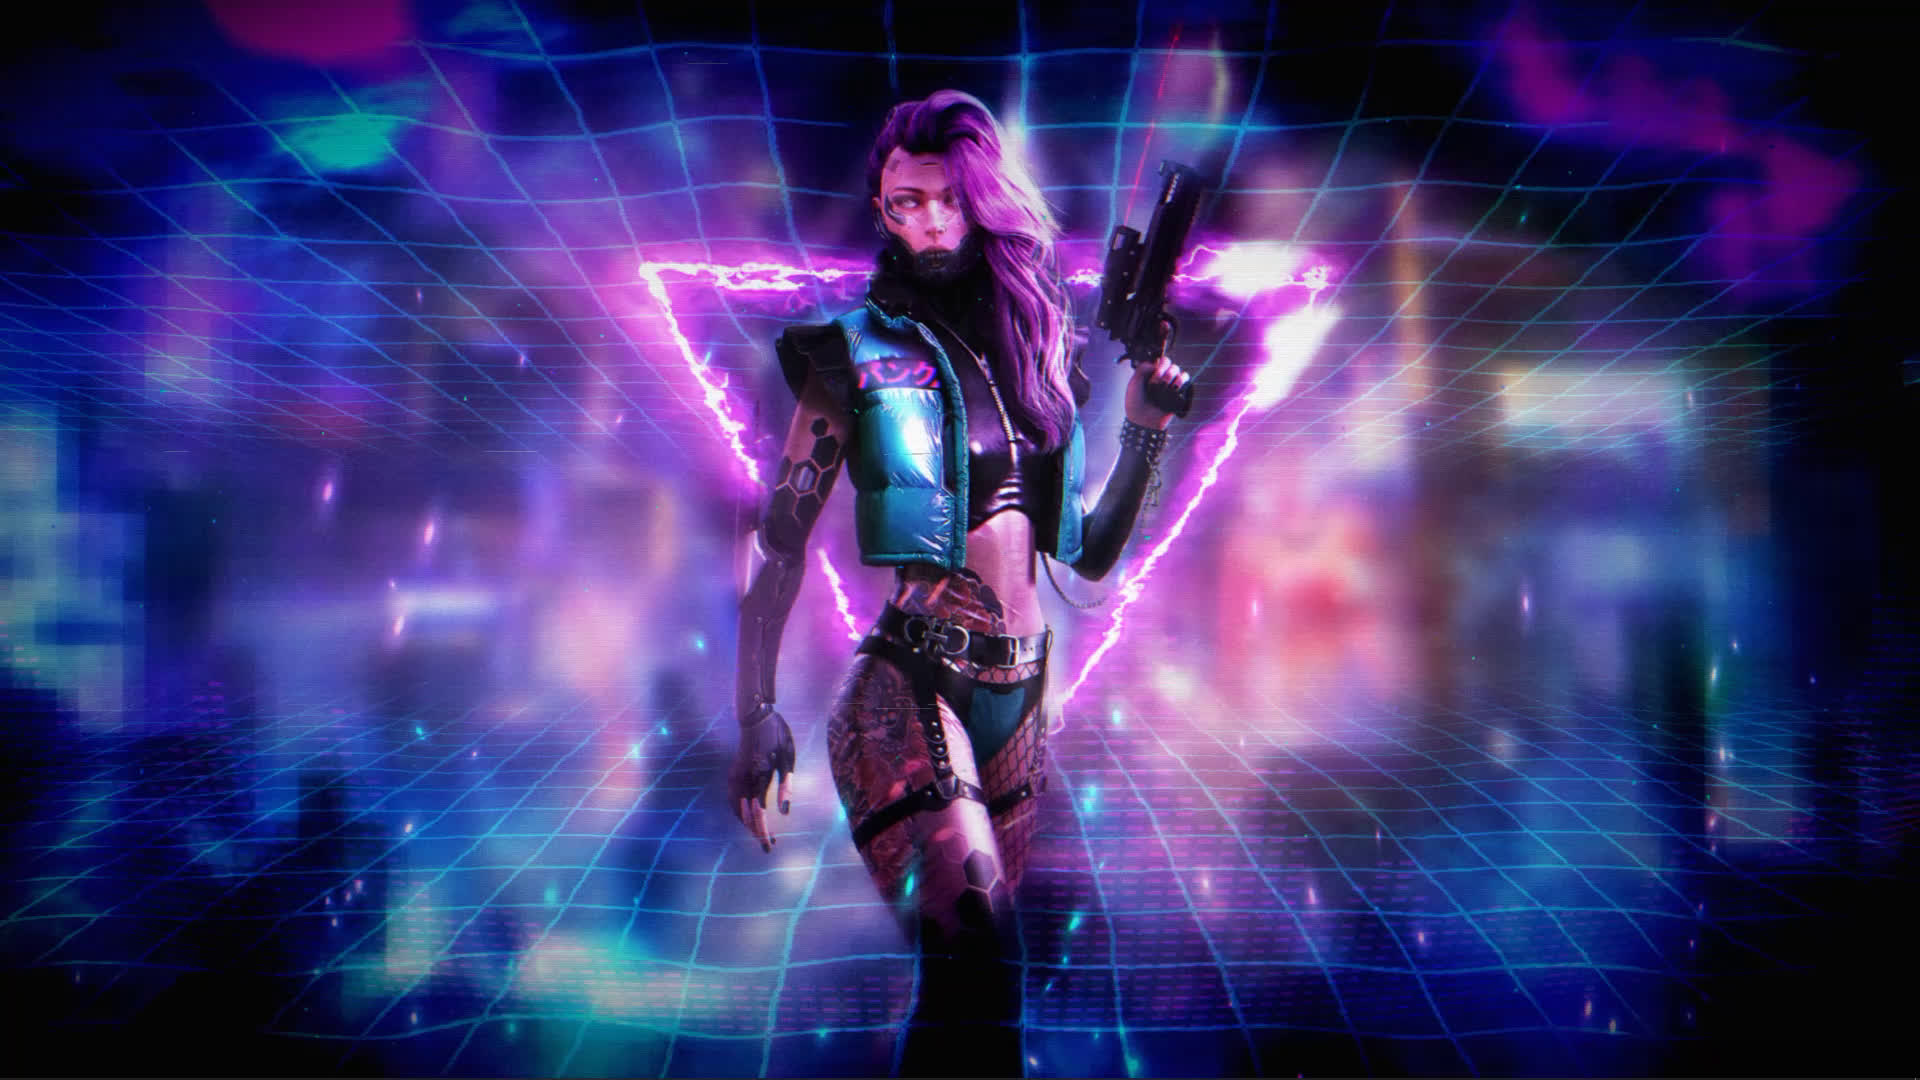 Cyberpunk girl Wallpaper 4K Future tech Futuristic Dope 6686